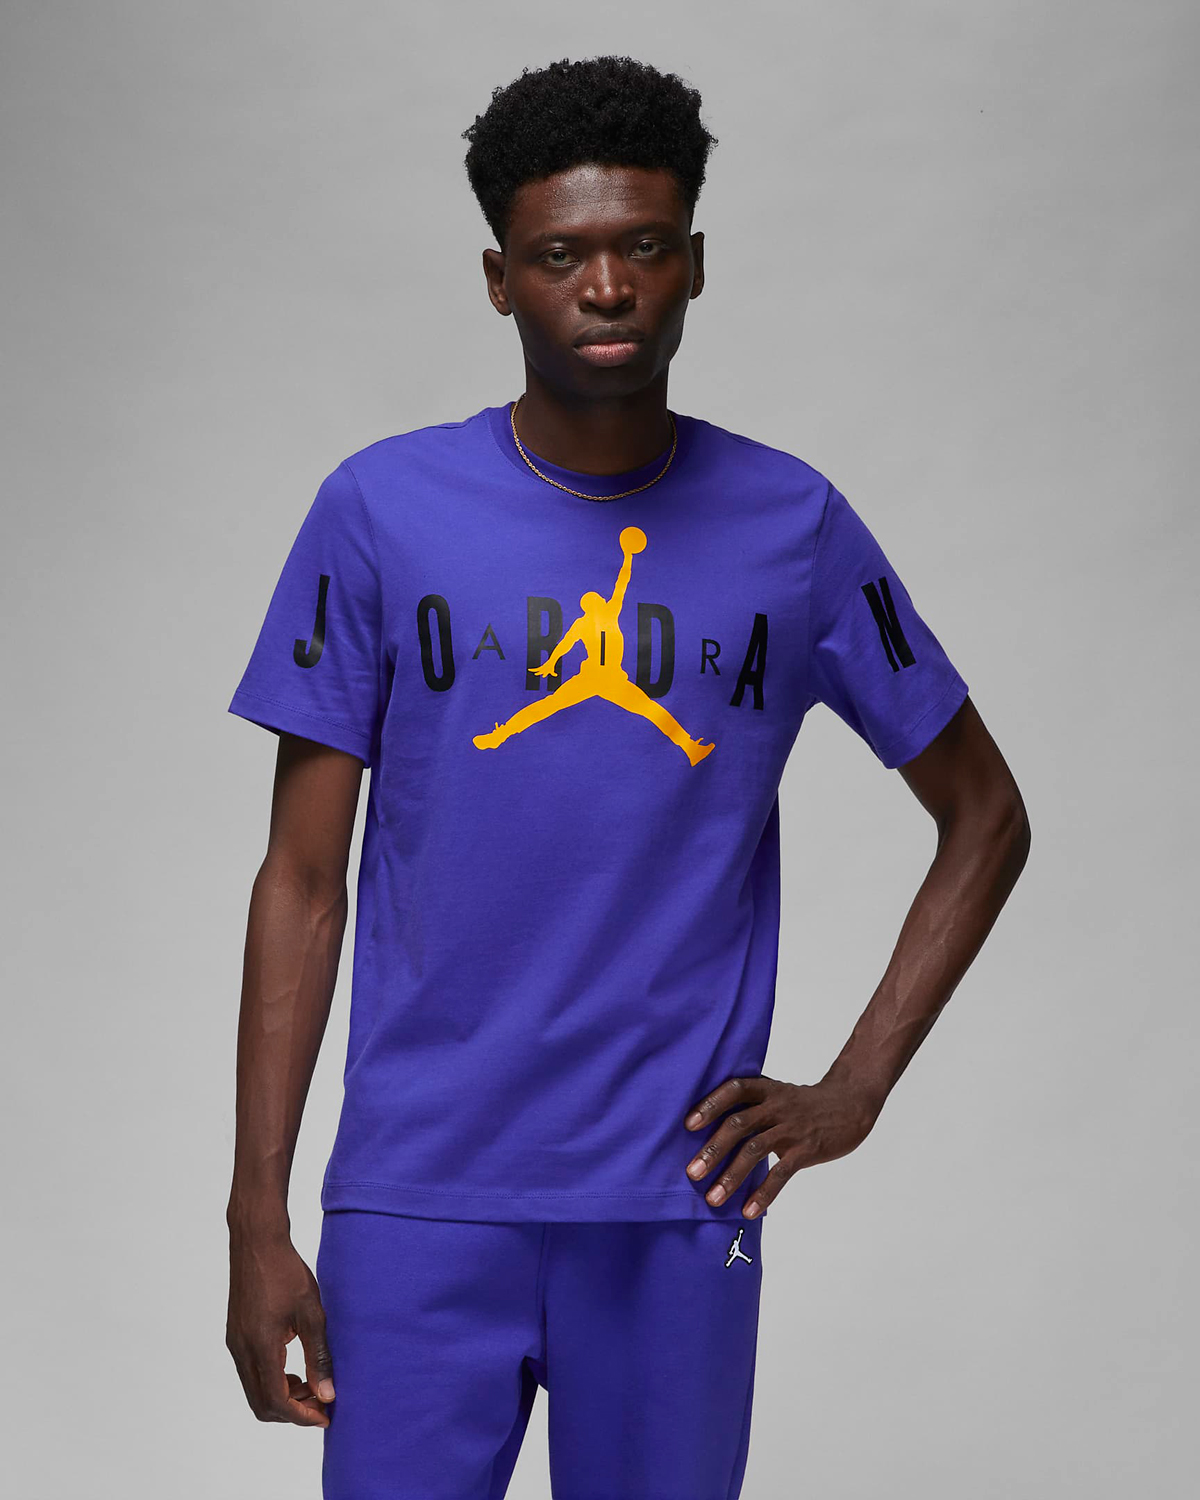 Air Jordan 1 Mid Lakers Shirts Hats Clothing Outfits